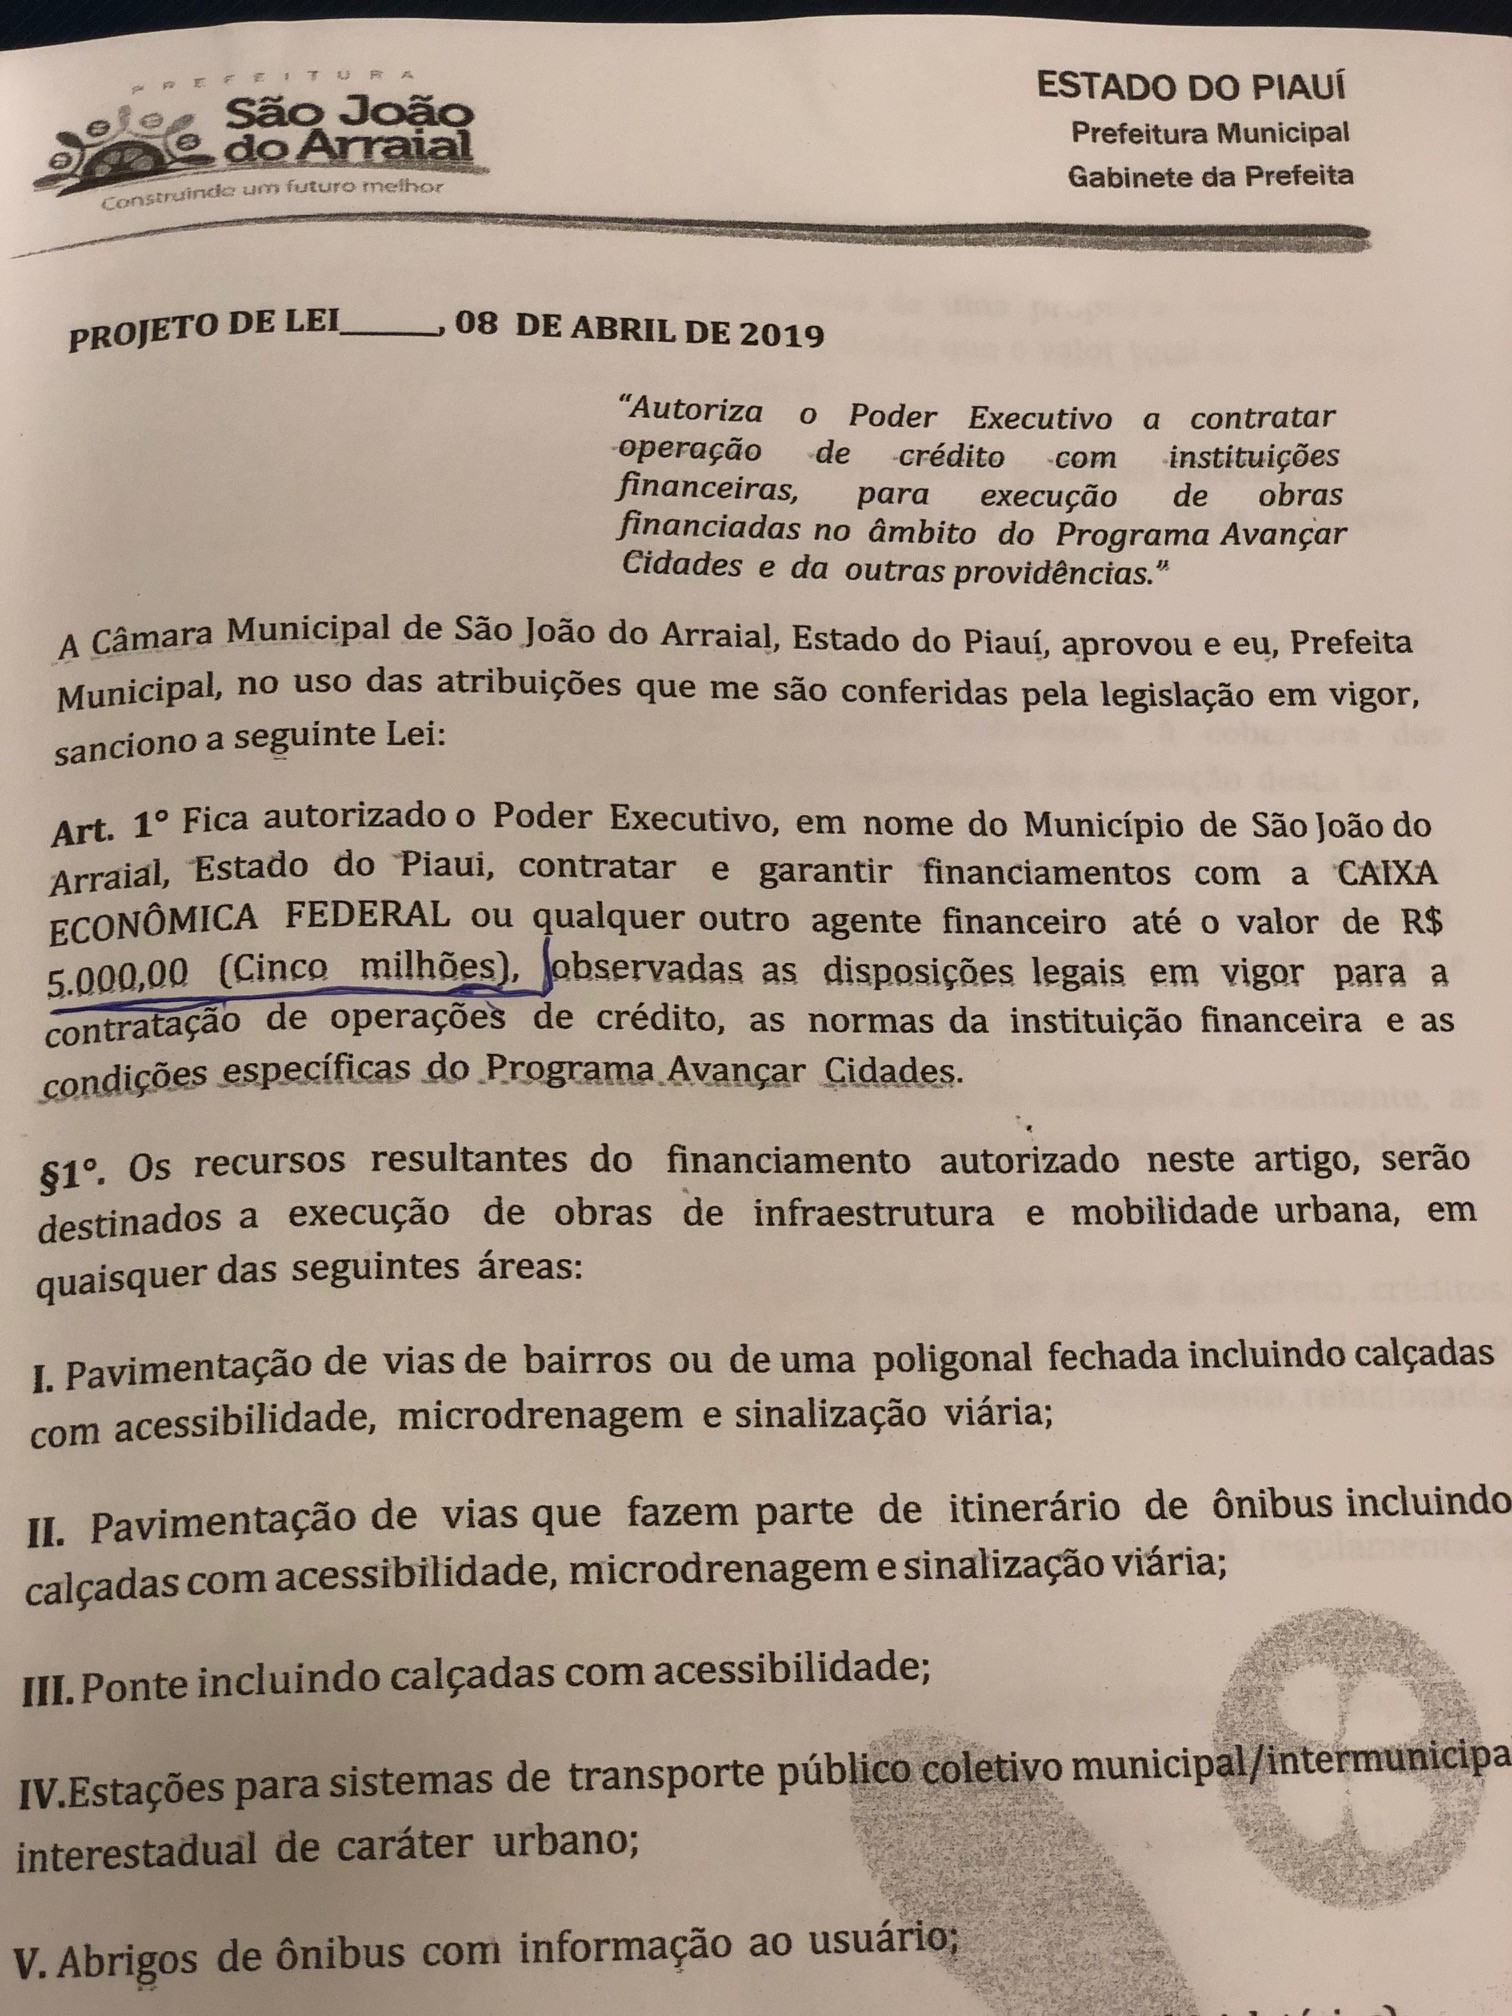 Projeto de Lei da prefeita Vilma Lima que pede para contrair empréstimo de R$ 5 milhões